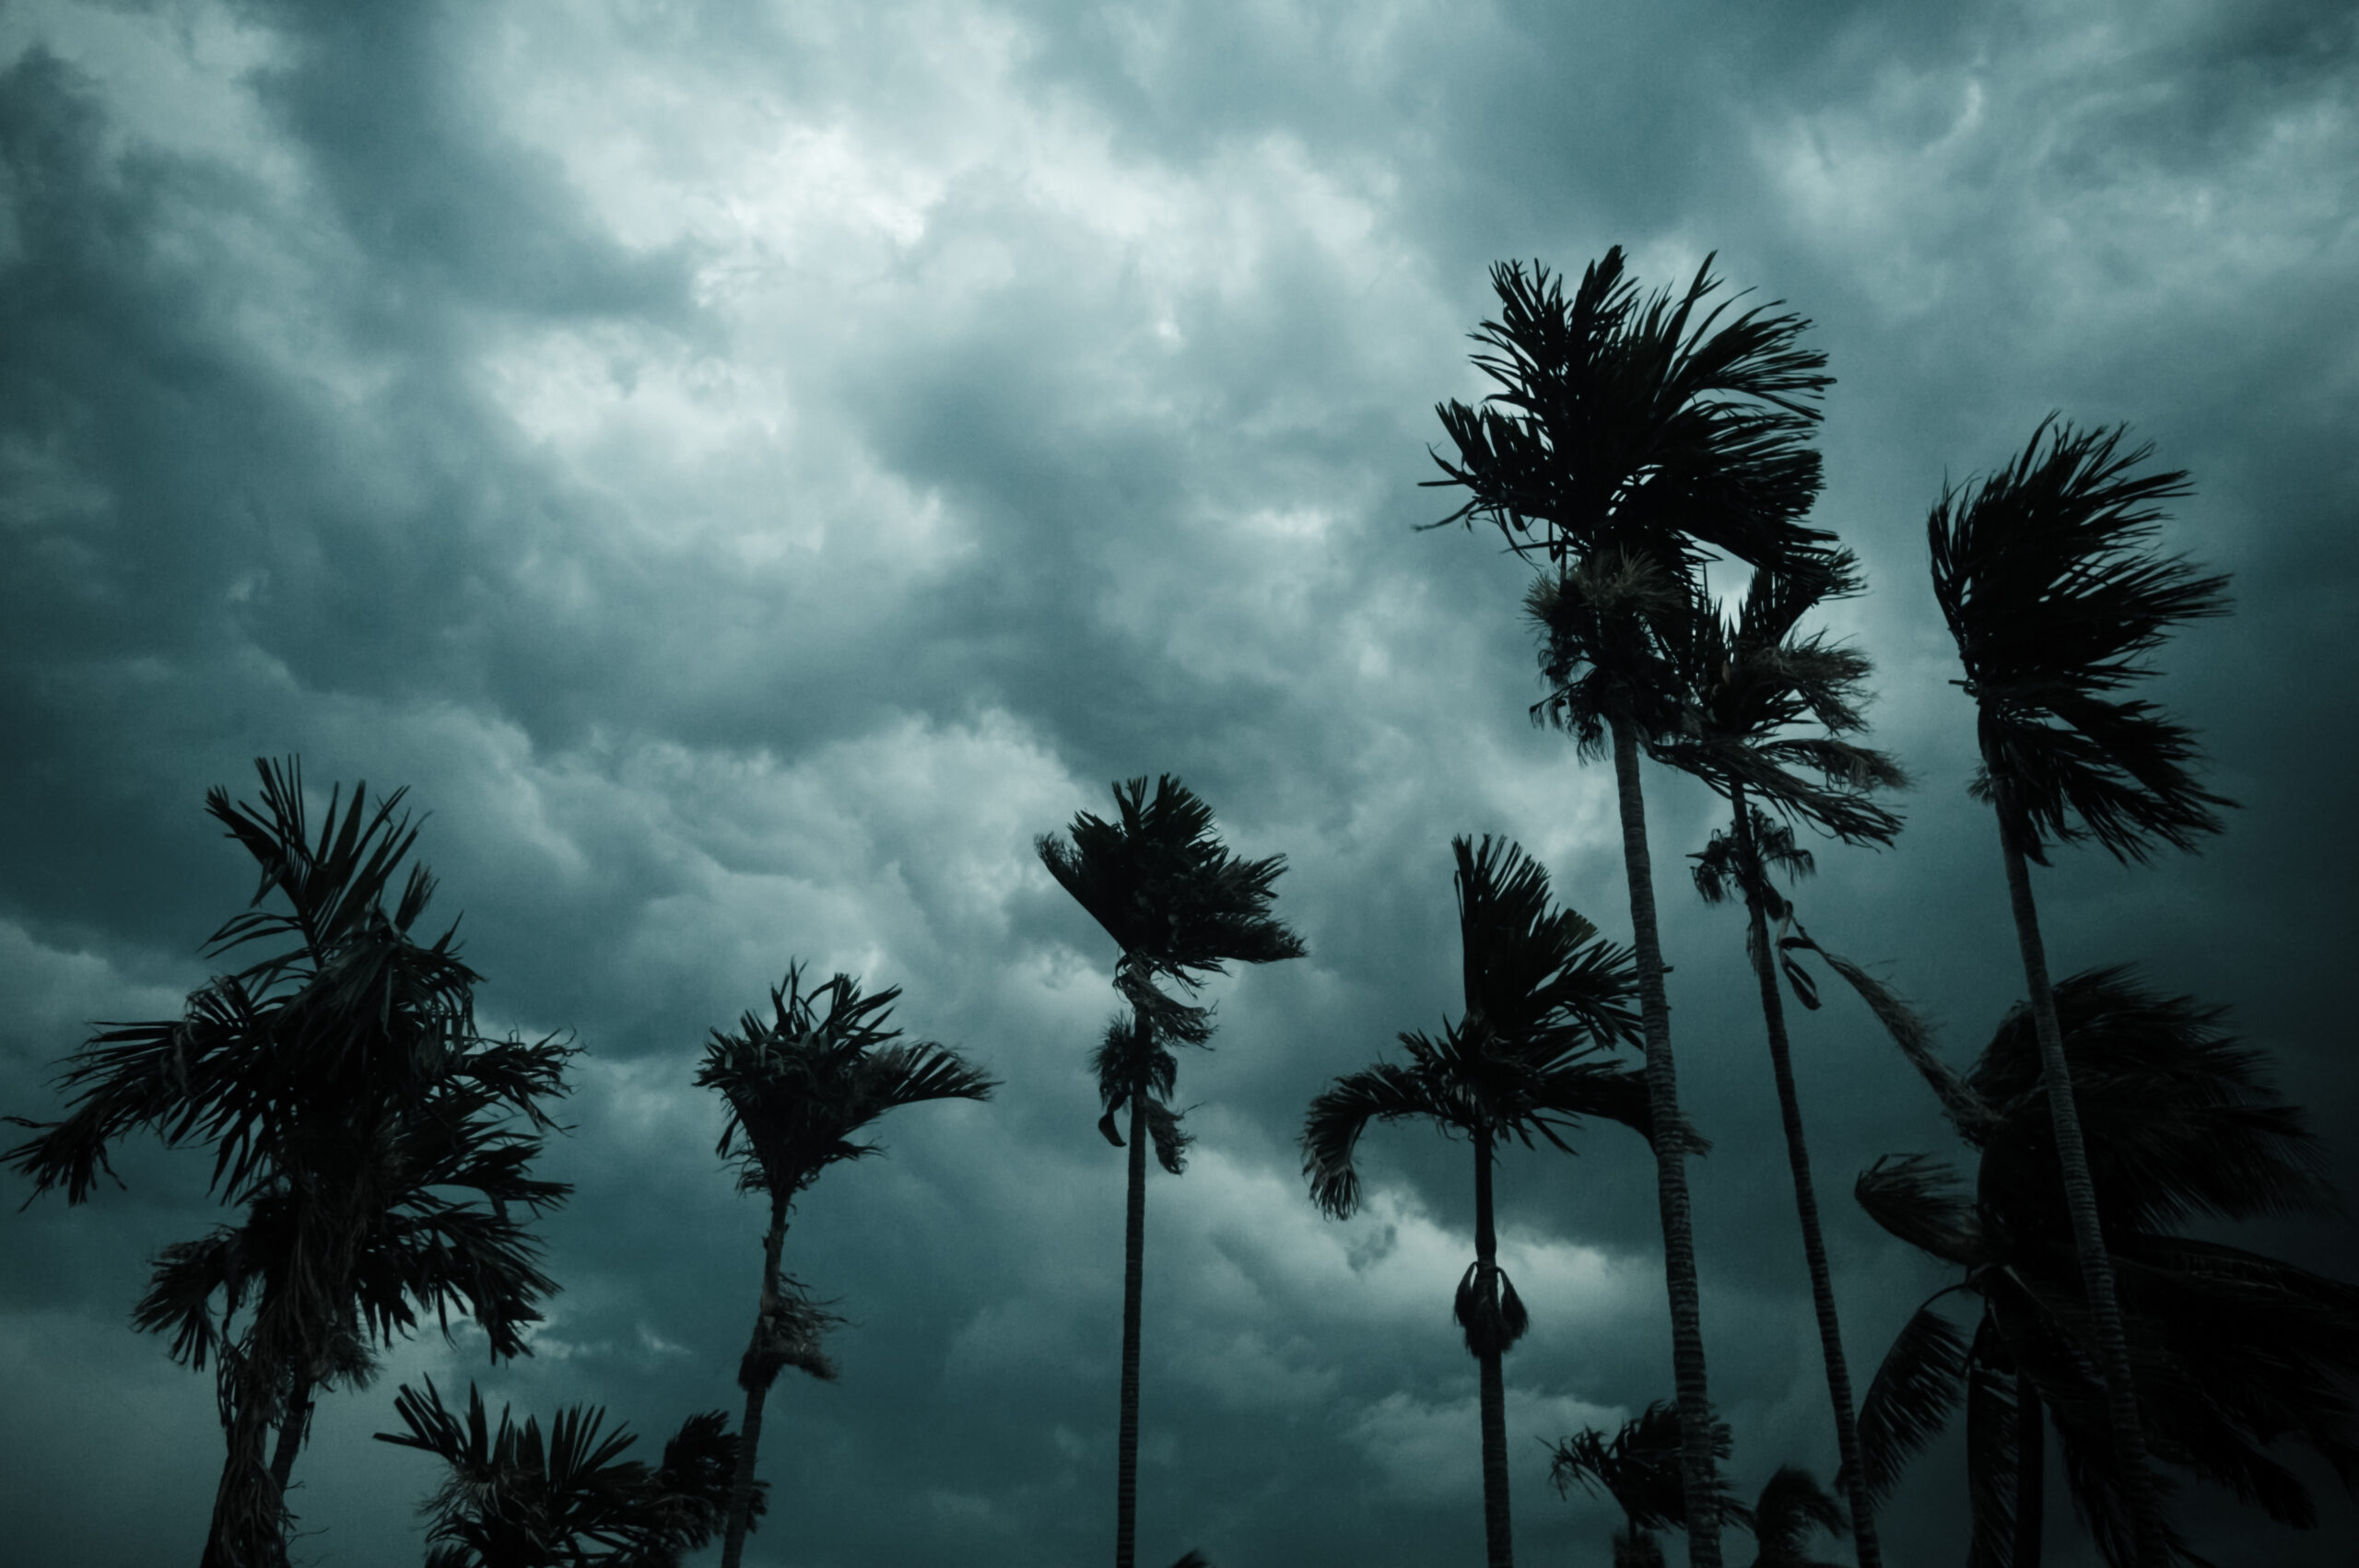 2024 orkaanwacht: het belang van vooruit plannen